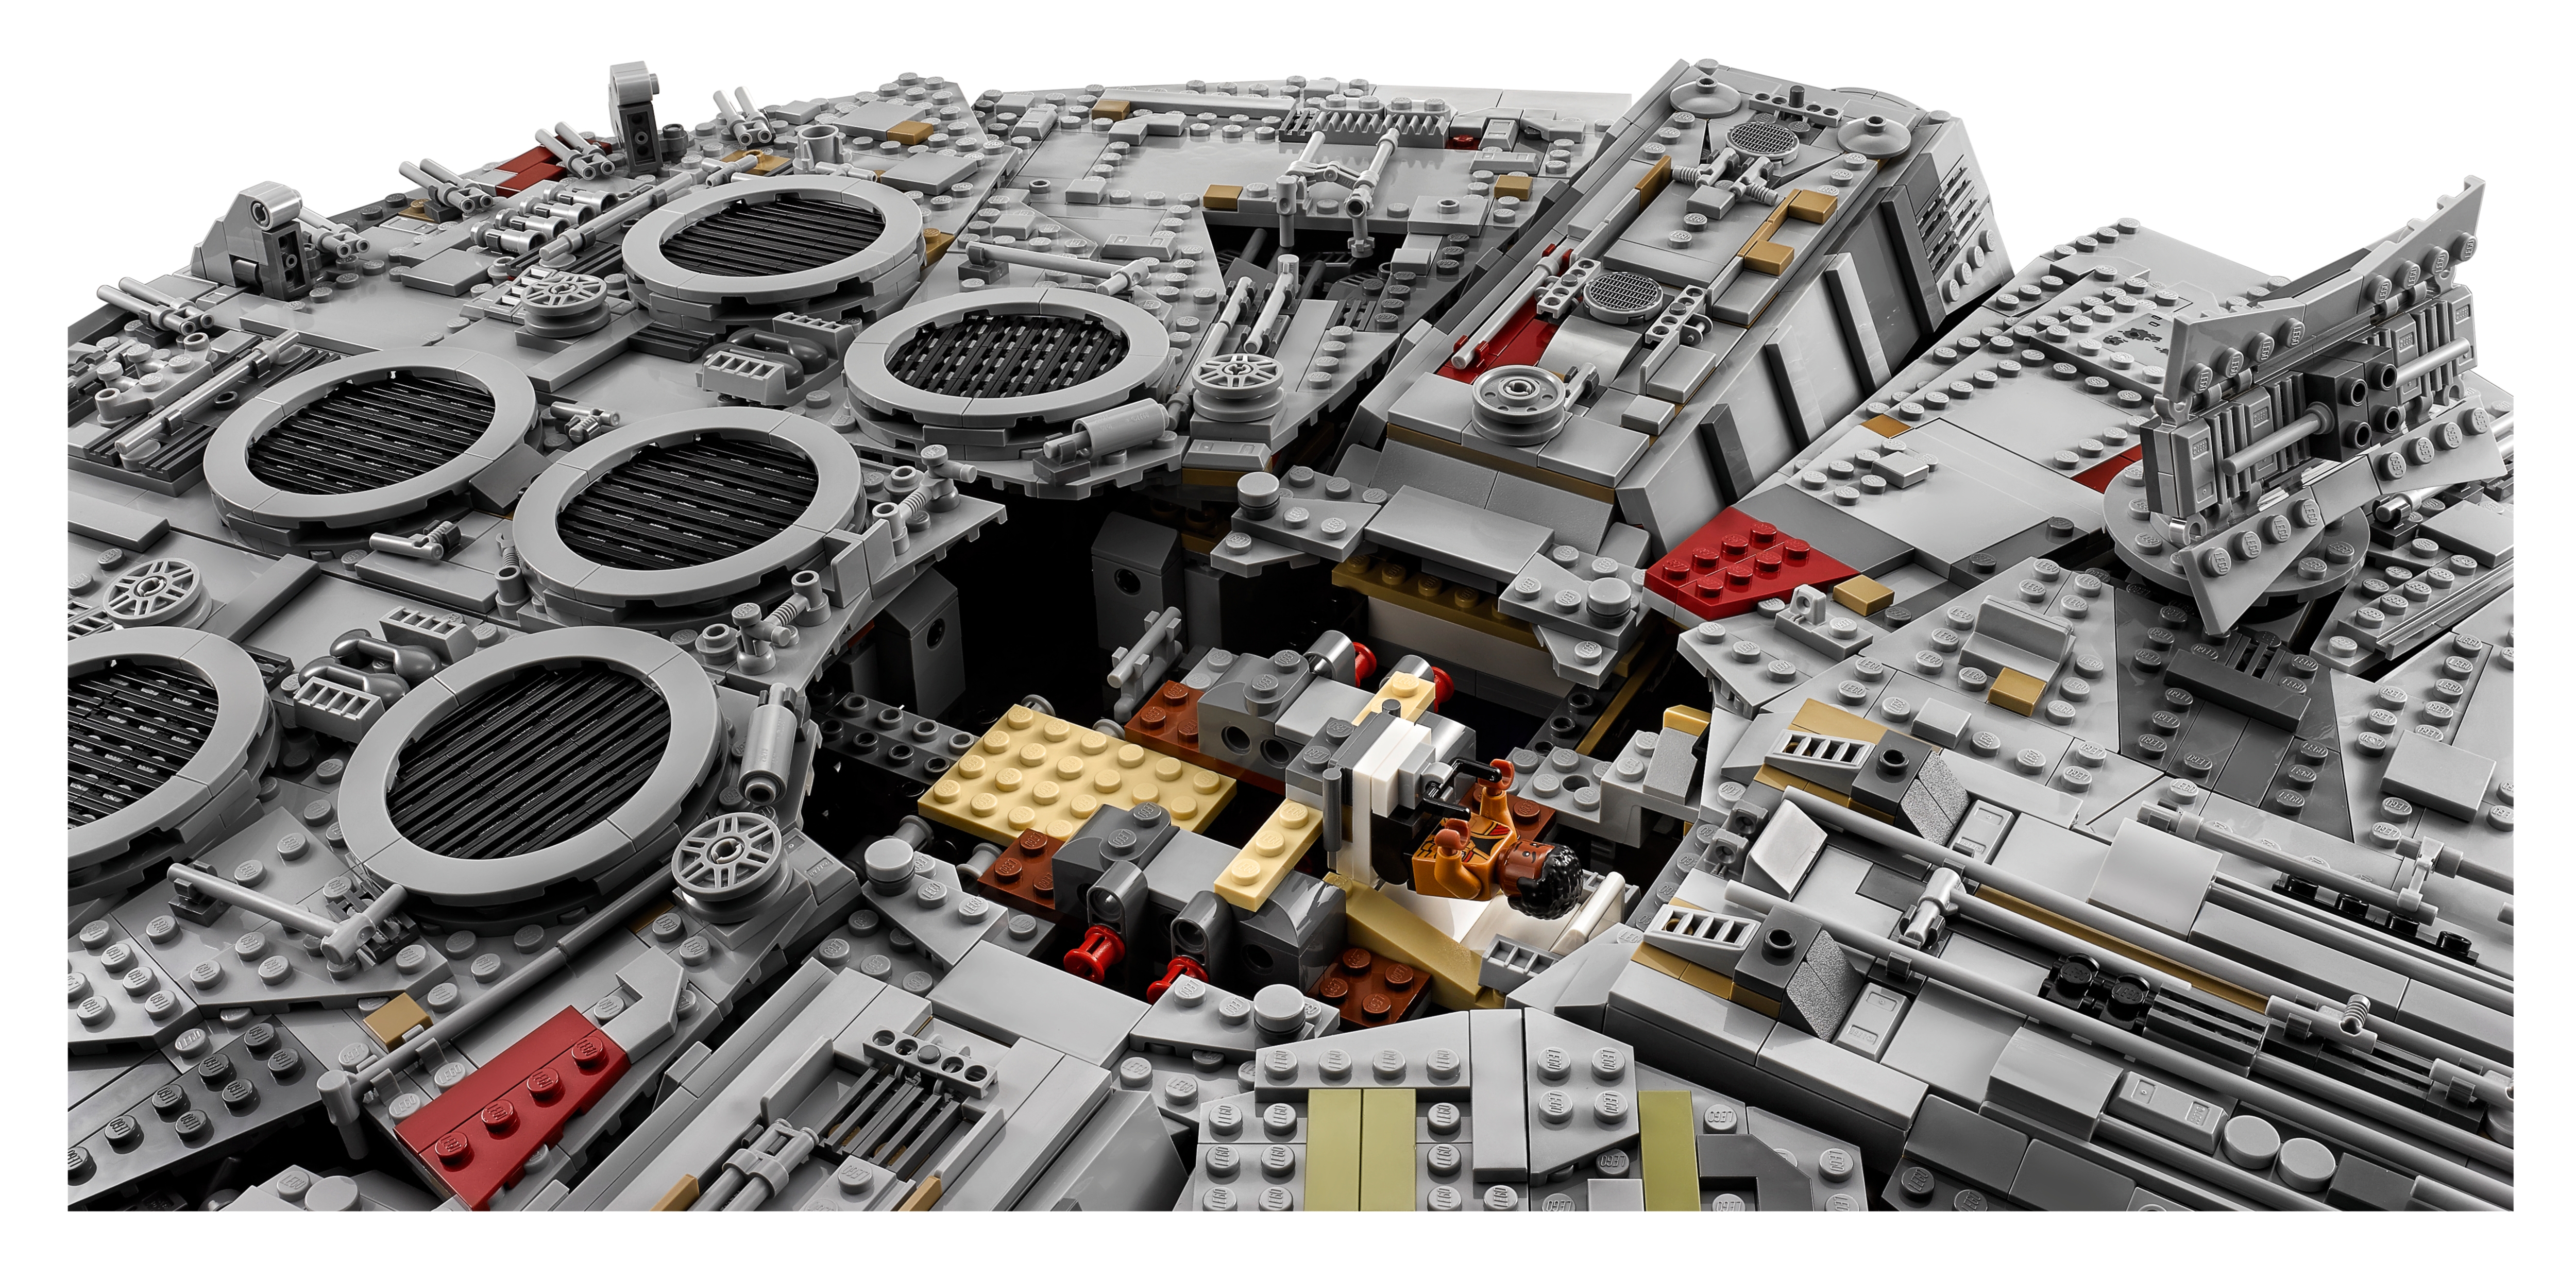 LEGO® Star Wars 75192 Millennium Falcon - Lego - Achat & prix